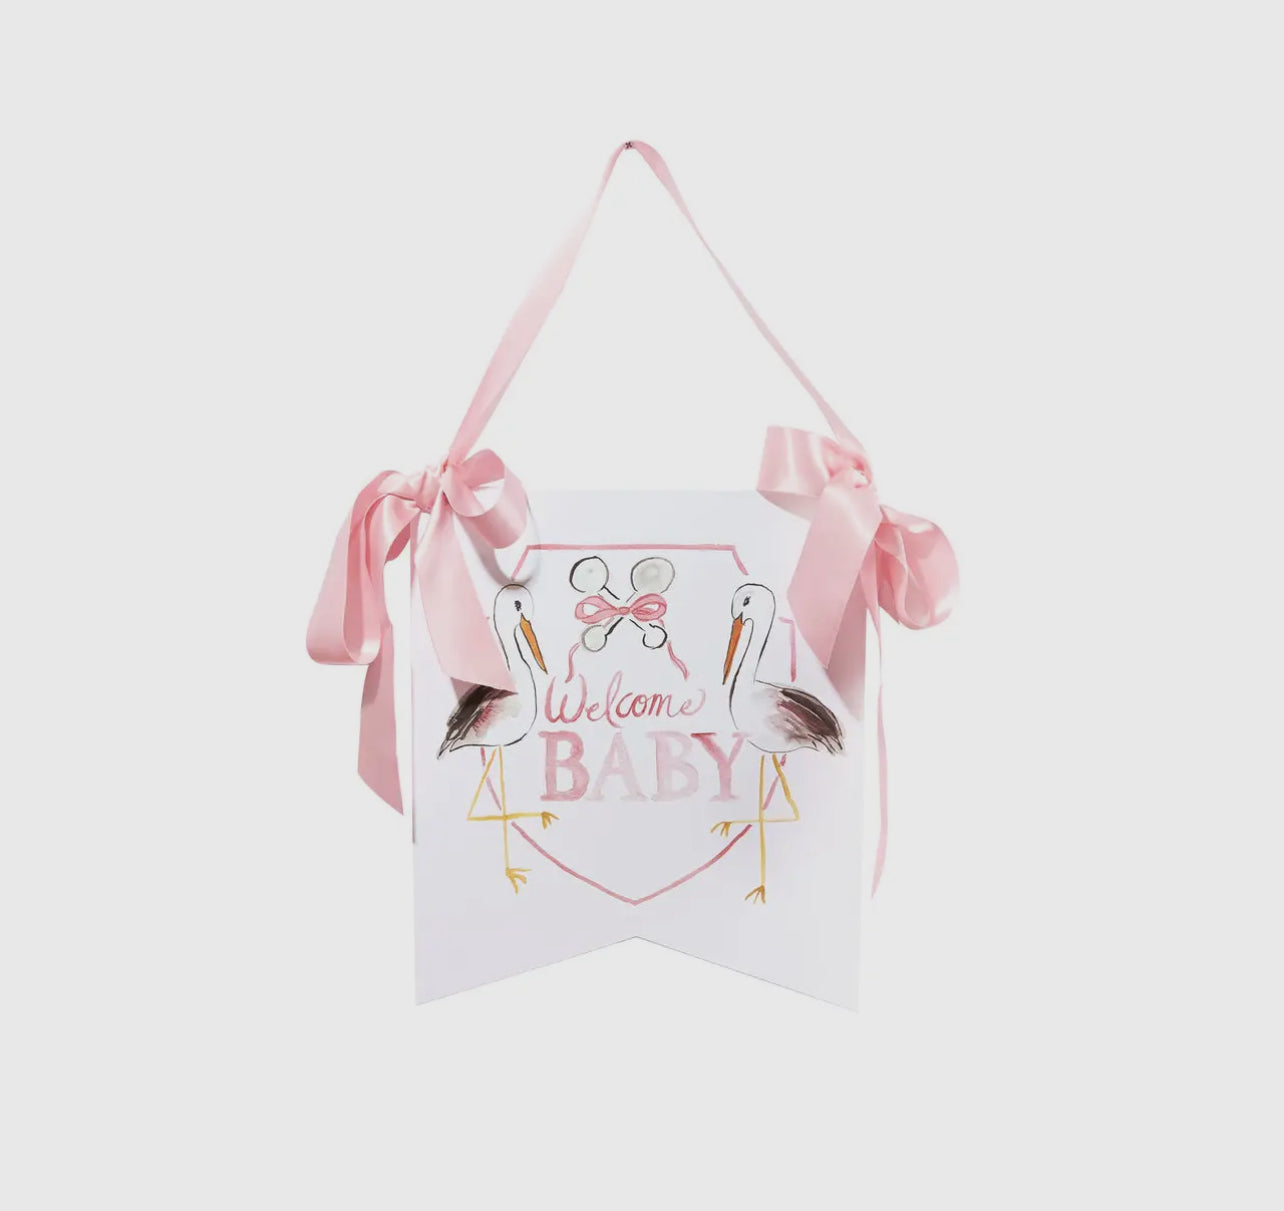 Welcome Baby Stork Hanger